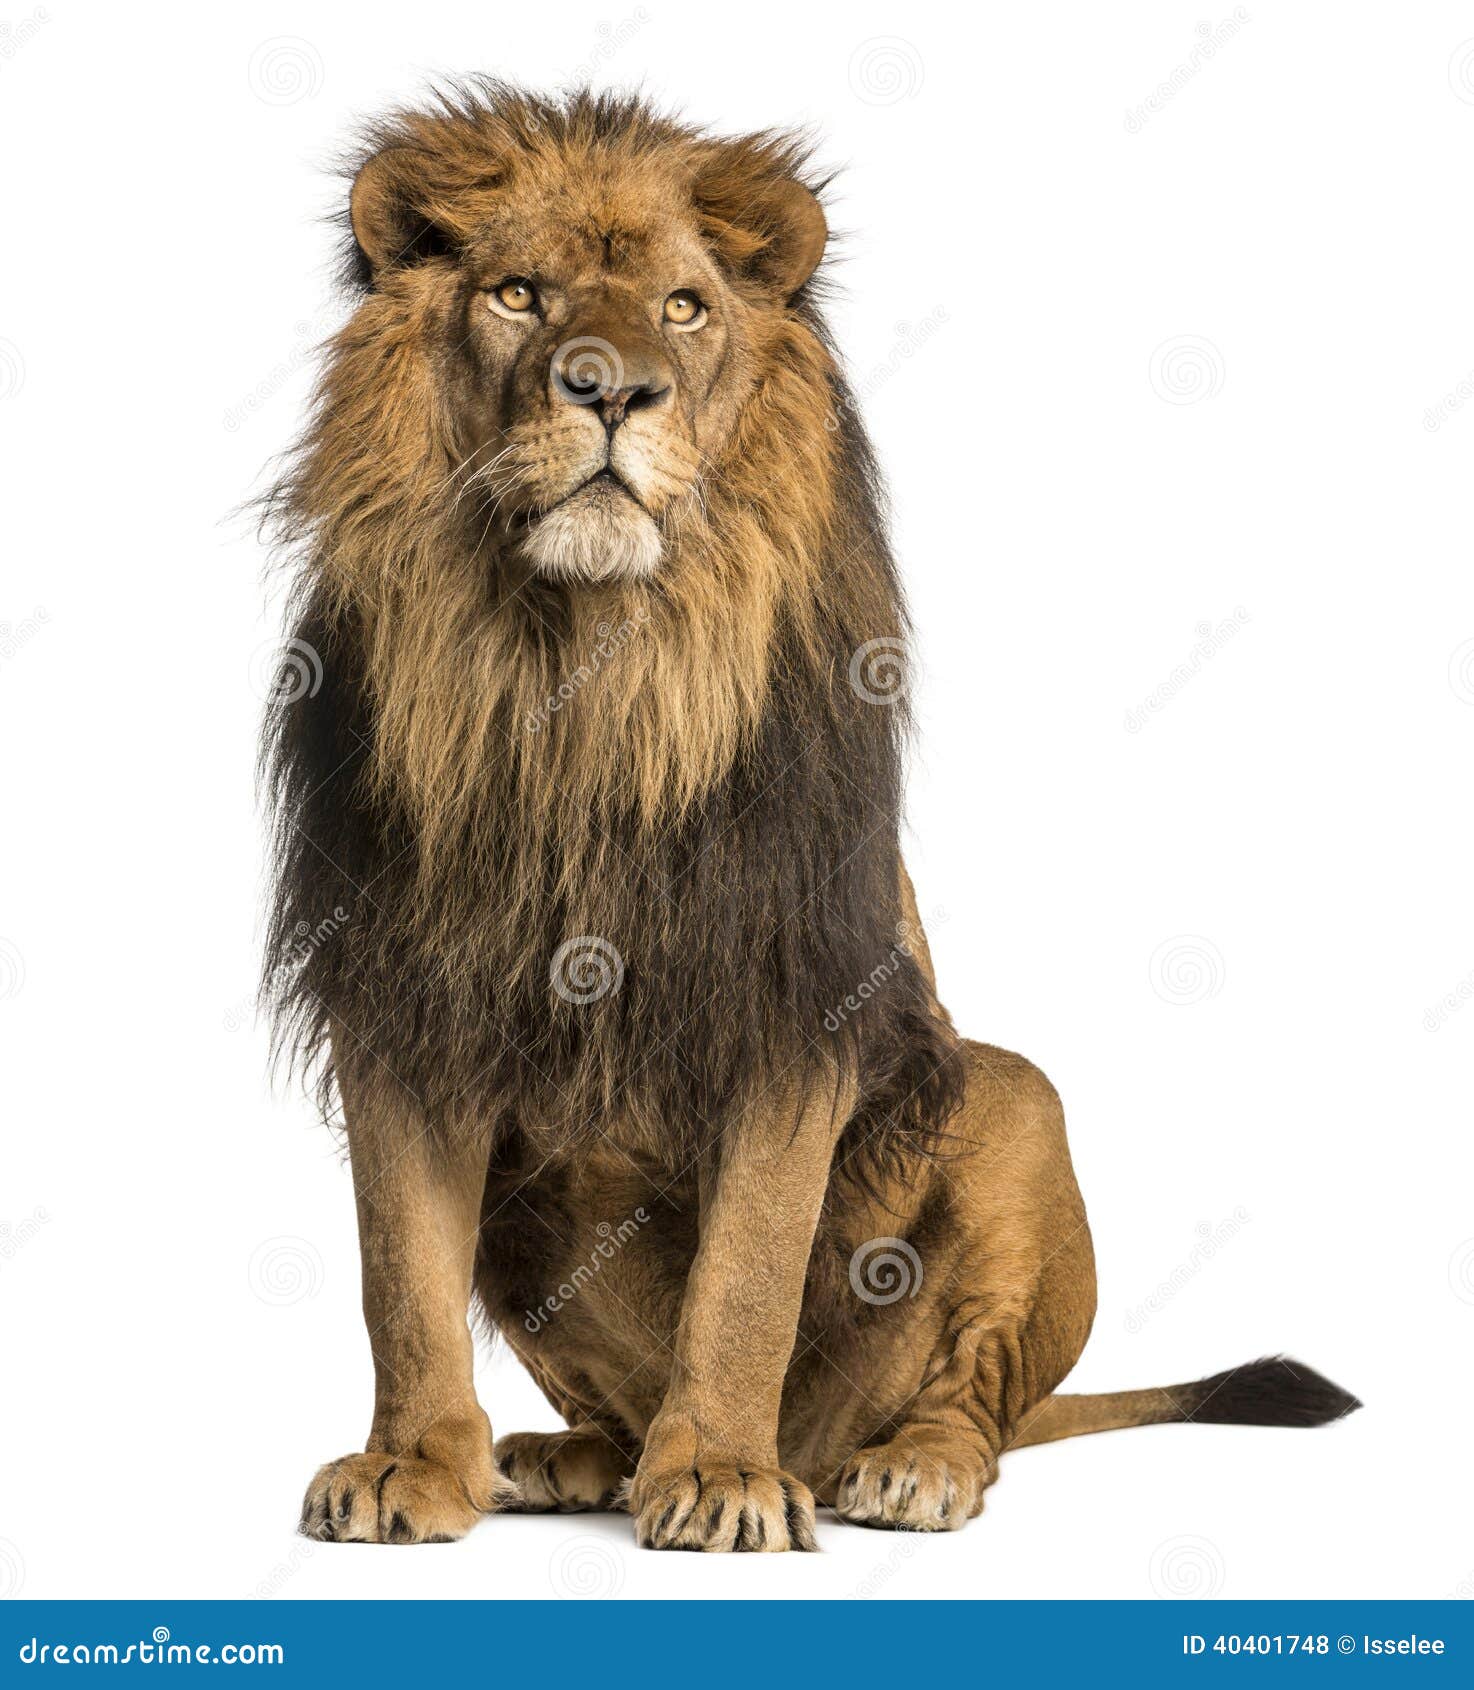 lion sitting, looking away, panthera leo, 10 years old